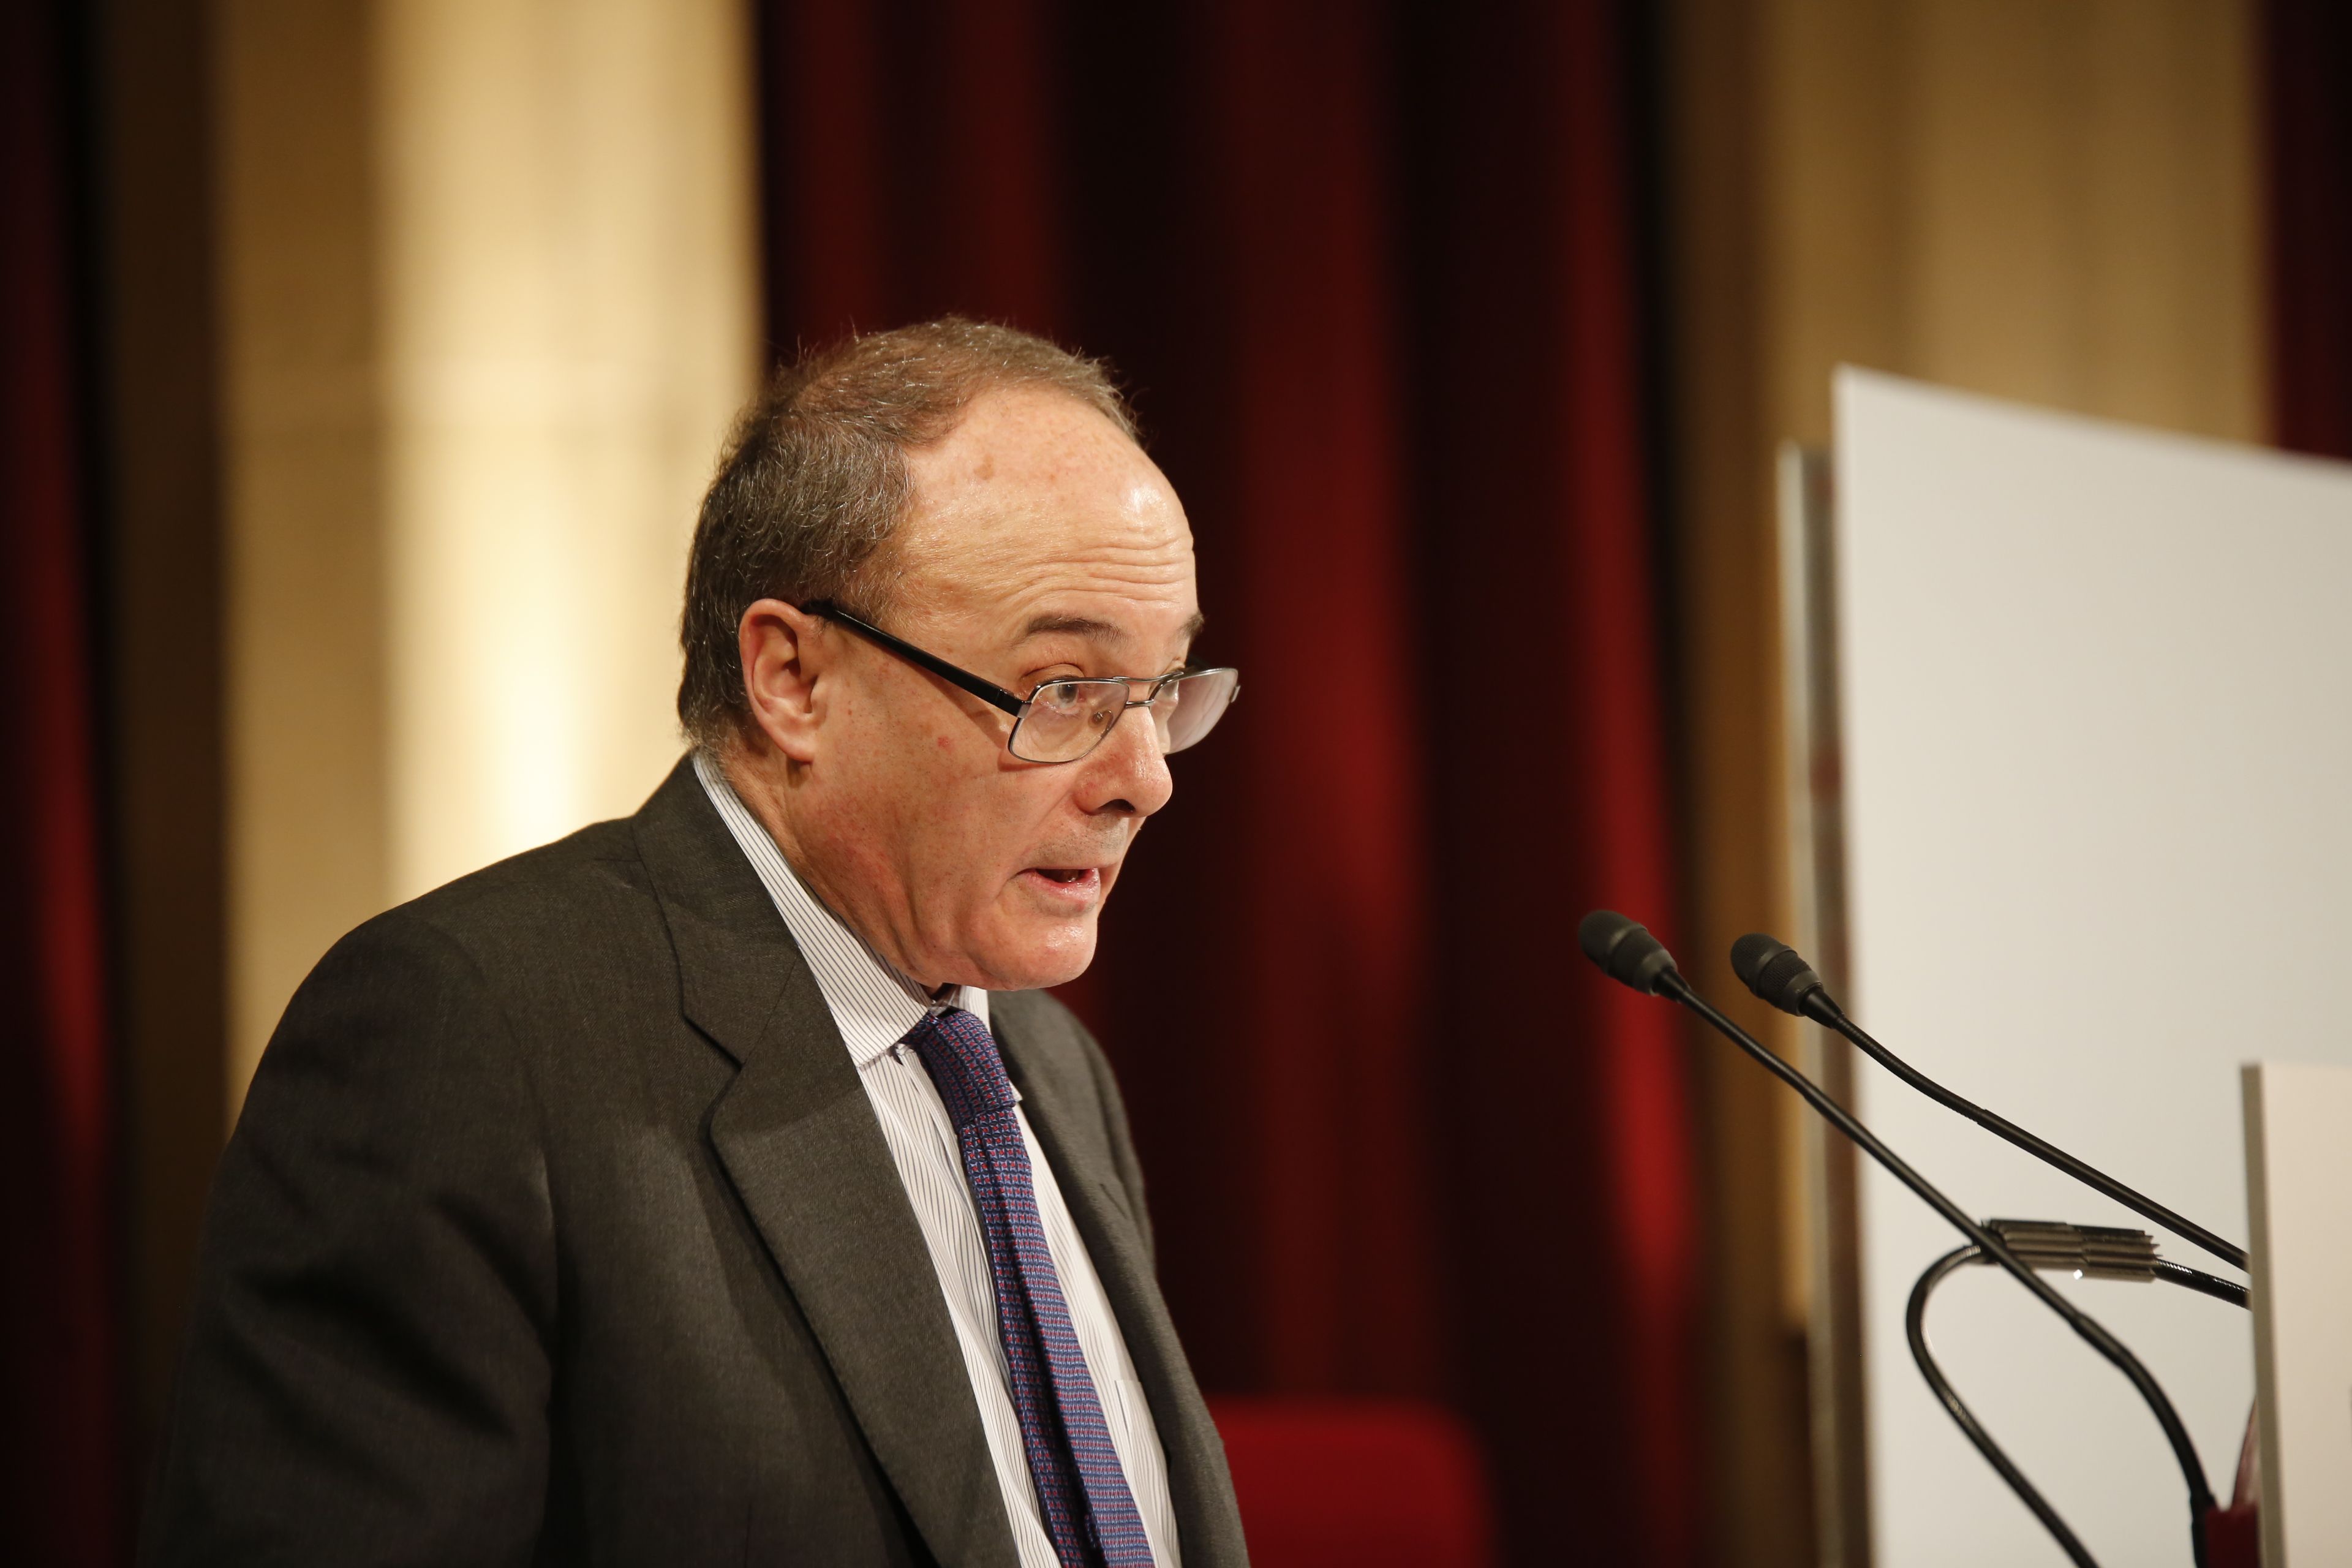 El Banco de España propone retrasar la jubilación más allá de los 67 años